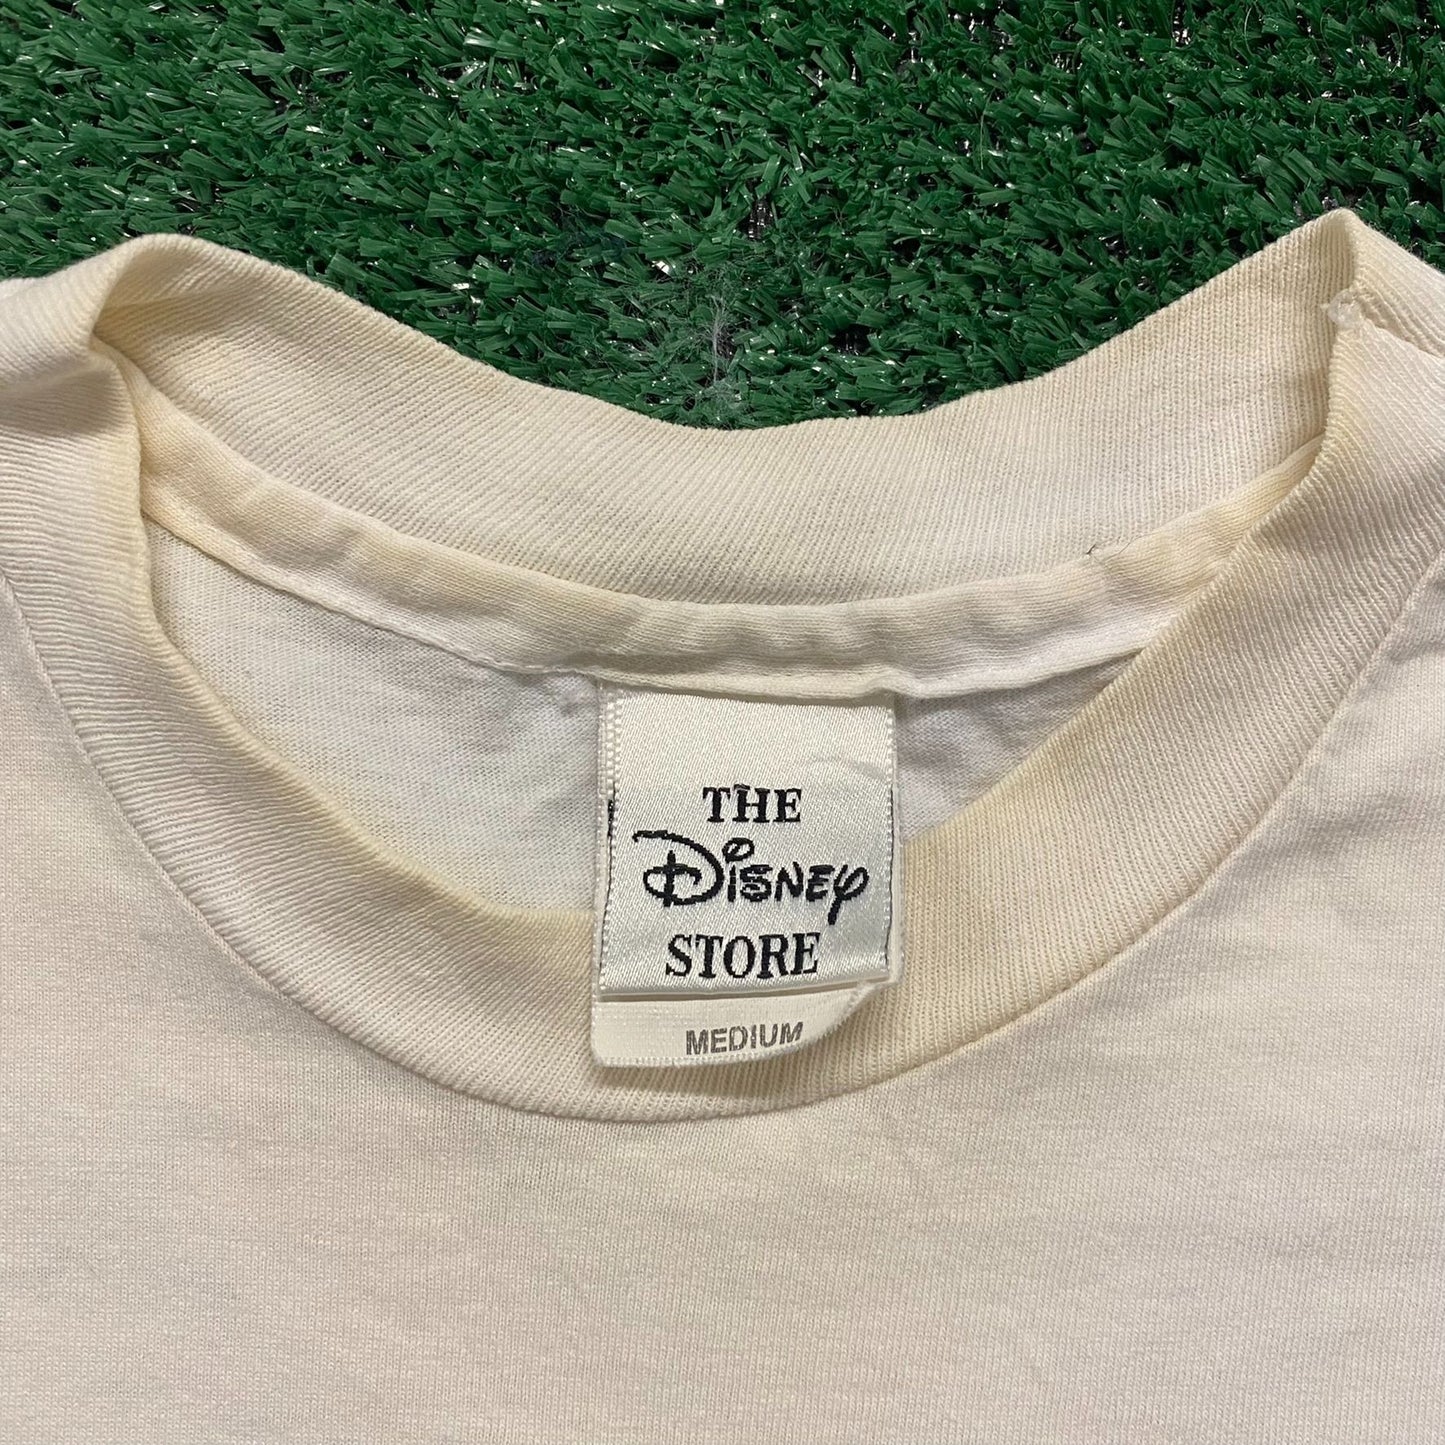 Minnie Mouse Vintage 90s Disney T-Shirt